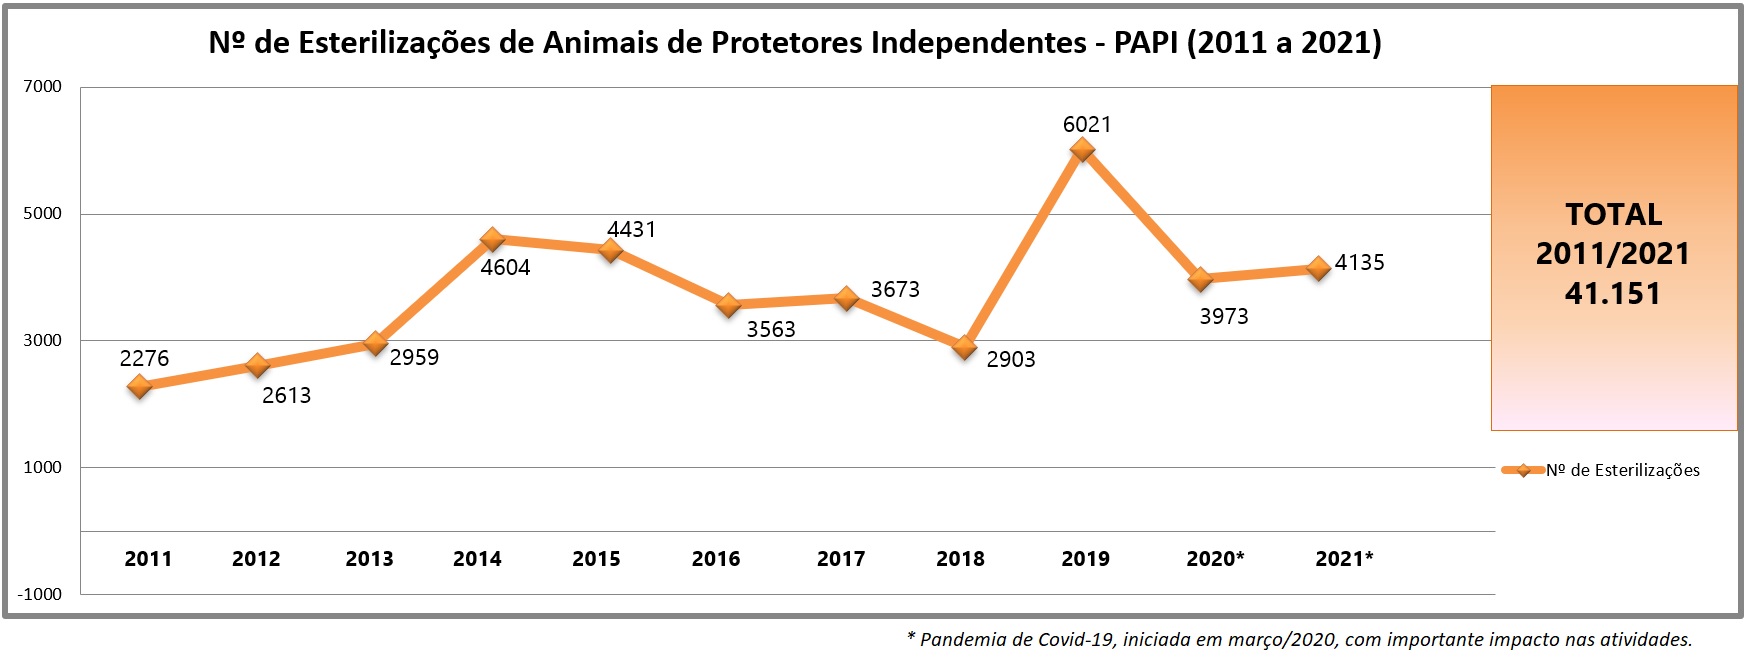  Ilustração do gráfico dos números de esterilizações de animais de protetores independentes, sendo que o total entre 2011 e 2021 é 41.151 esterilizações.